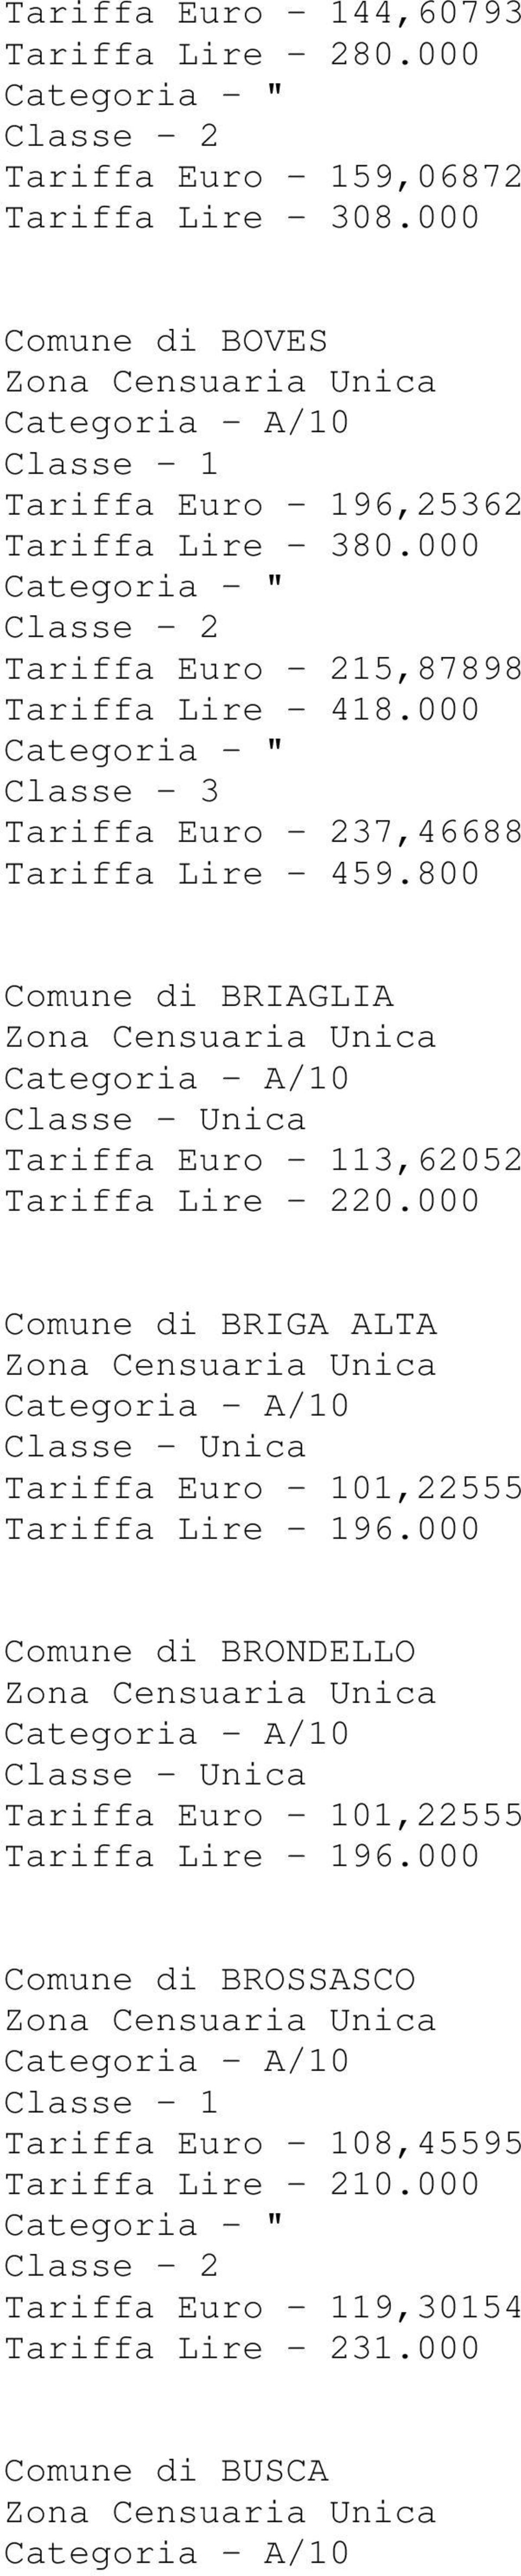 000 Tariffa Euro - 237,46688 Tariffa Lire - 459.800 Comune di BRIAGLIA Tariffa Euro - 113,62052 Tariffa Lire - 220.